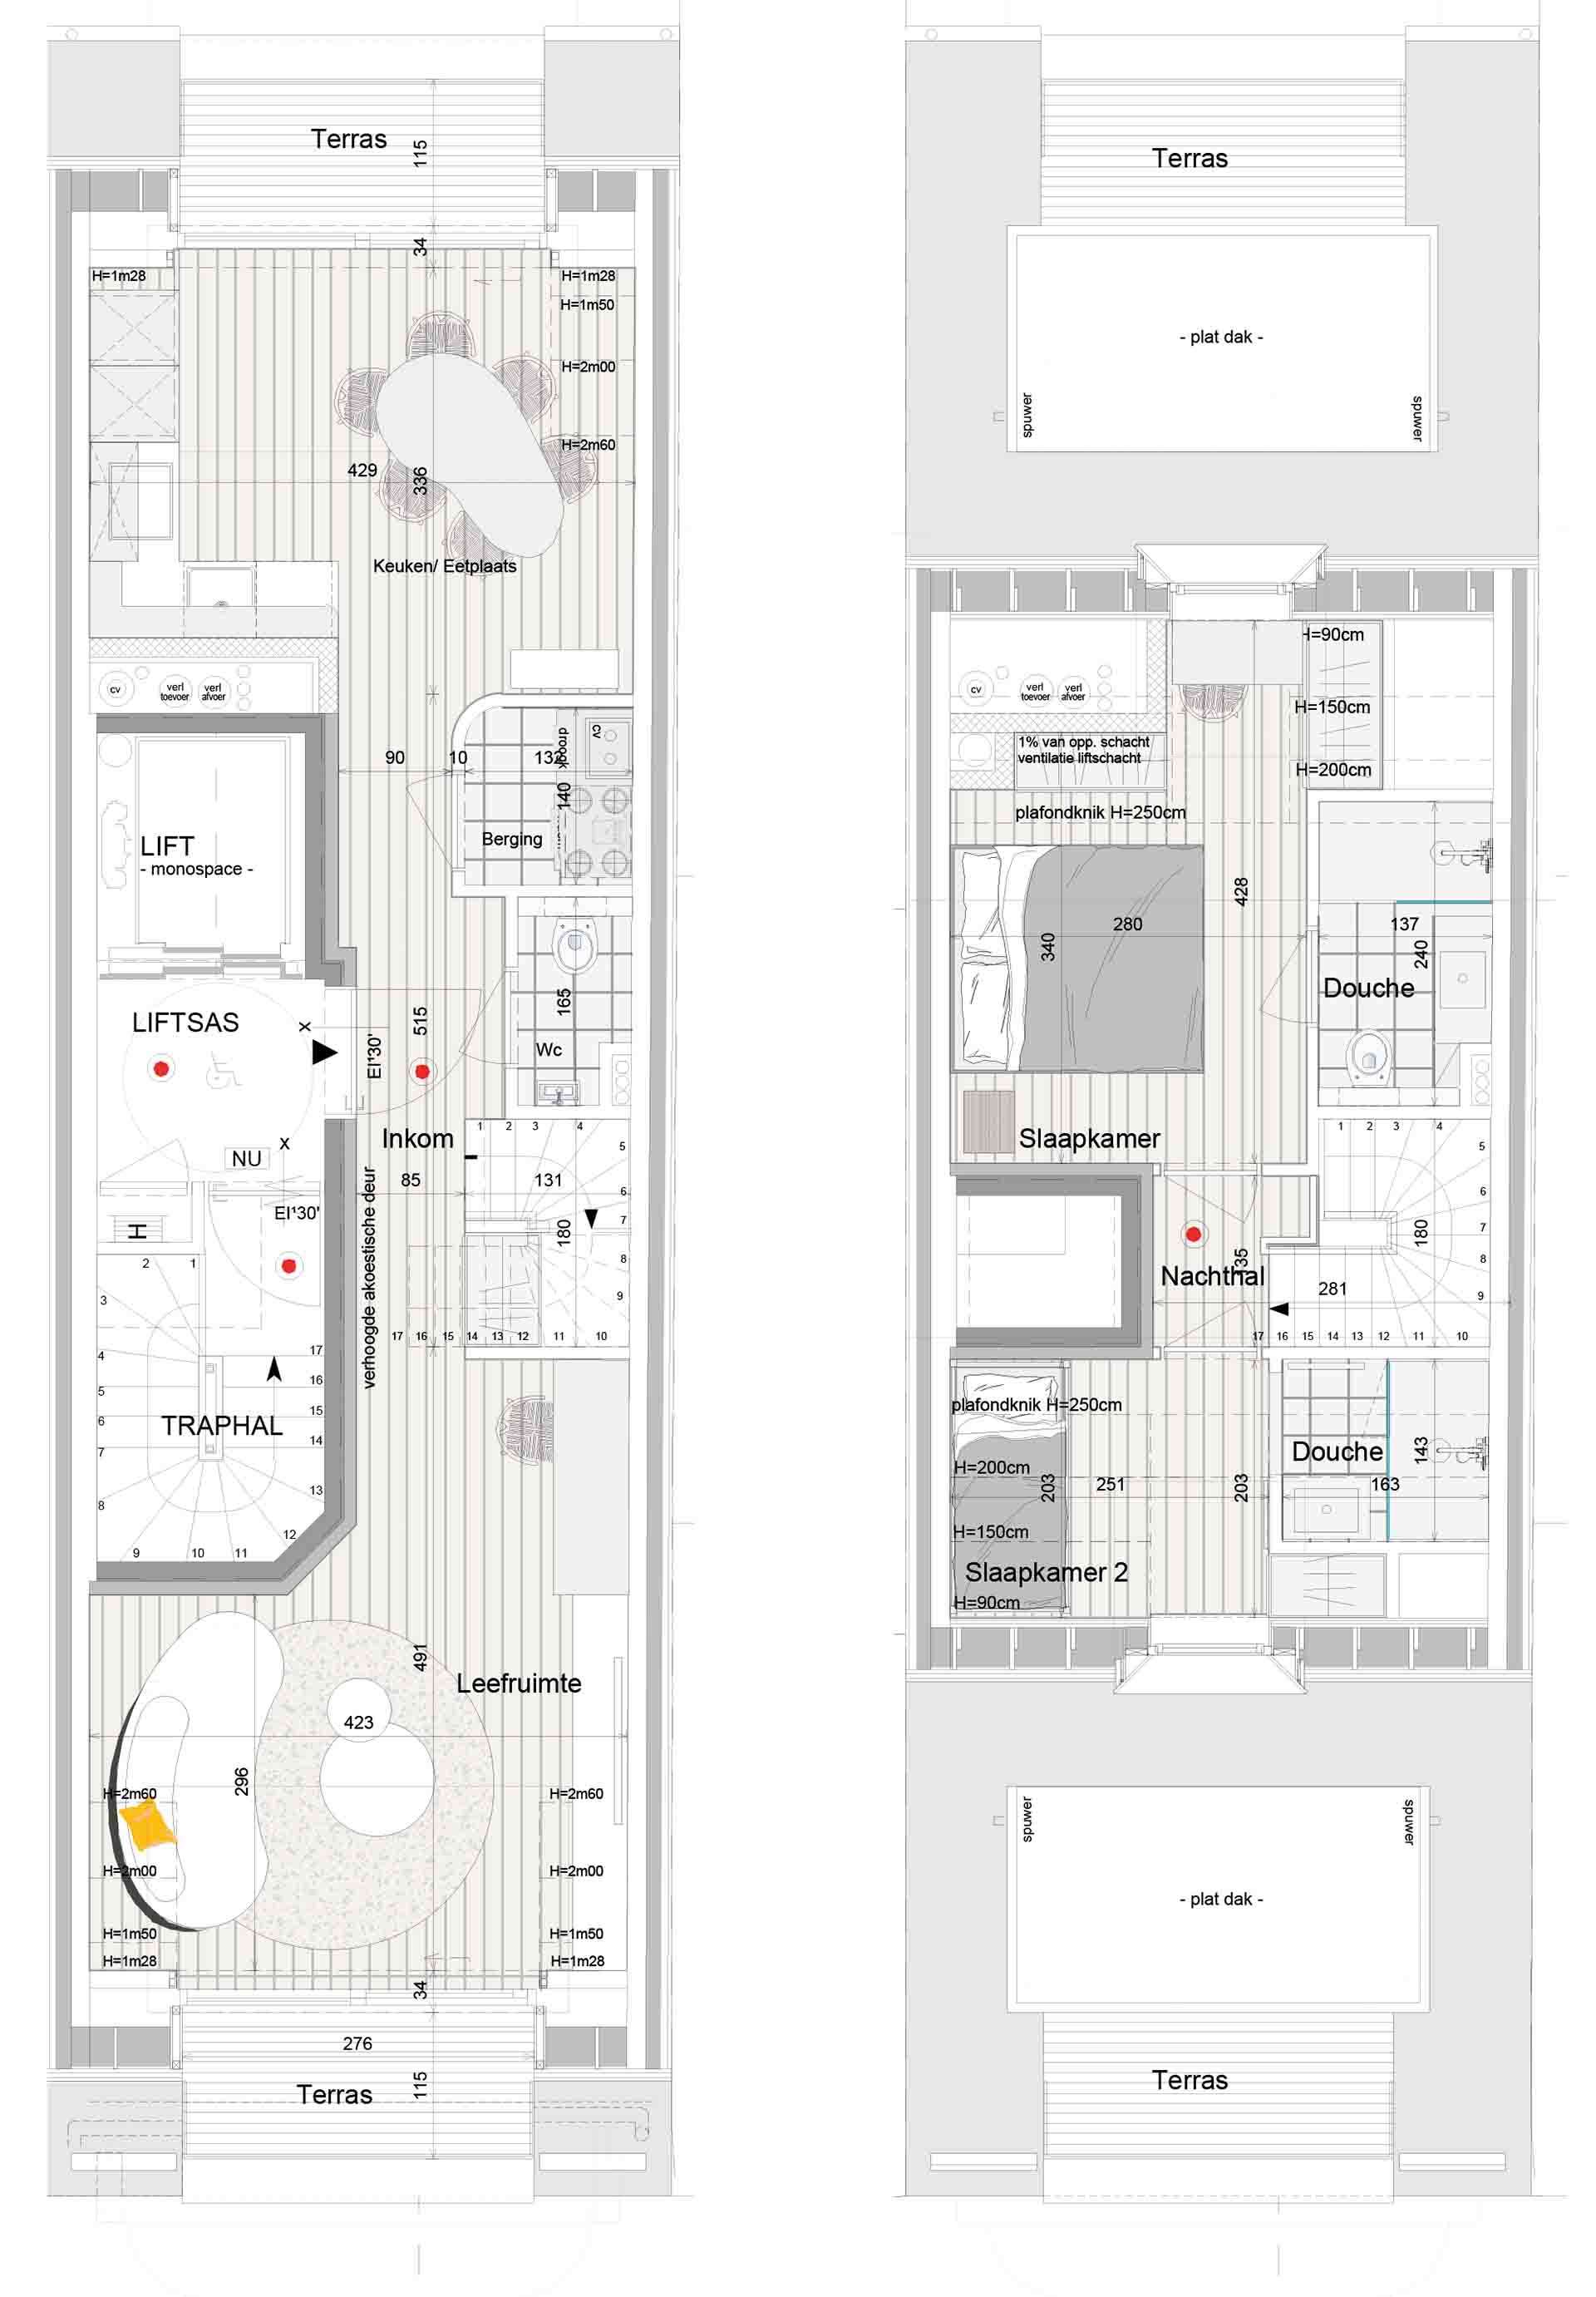 Residentie <br/> Cosmopolite - image appartement-te-koop-knokke-residentie-cosmopolite-plan-duplex-beneden-en-boven-2 on https://hoprom.be